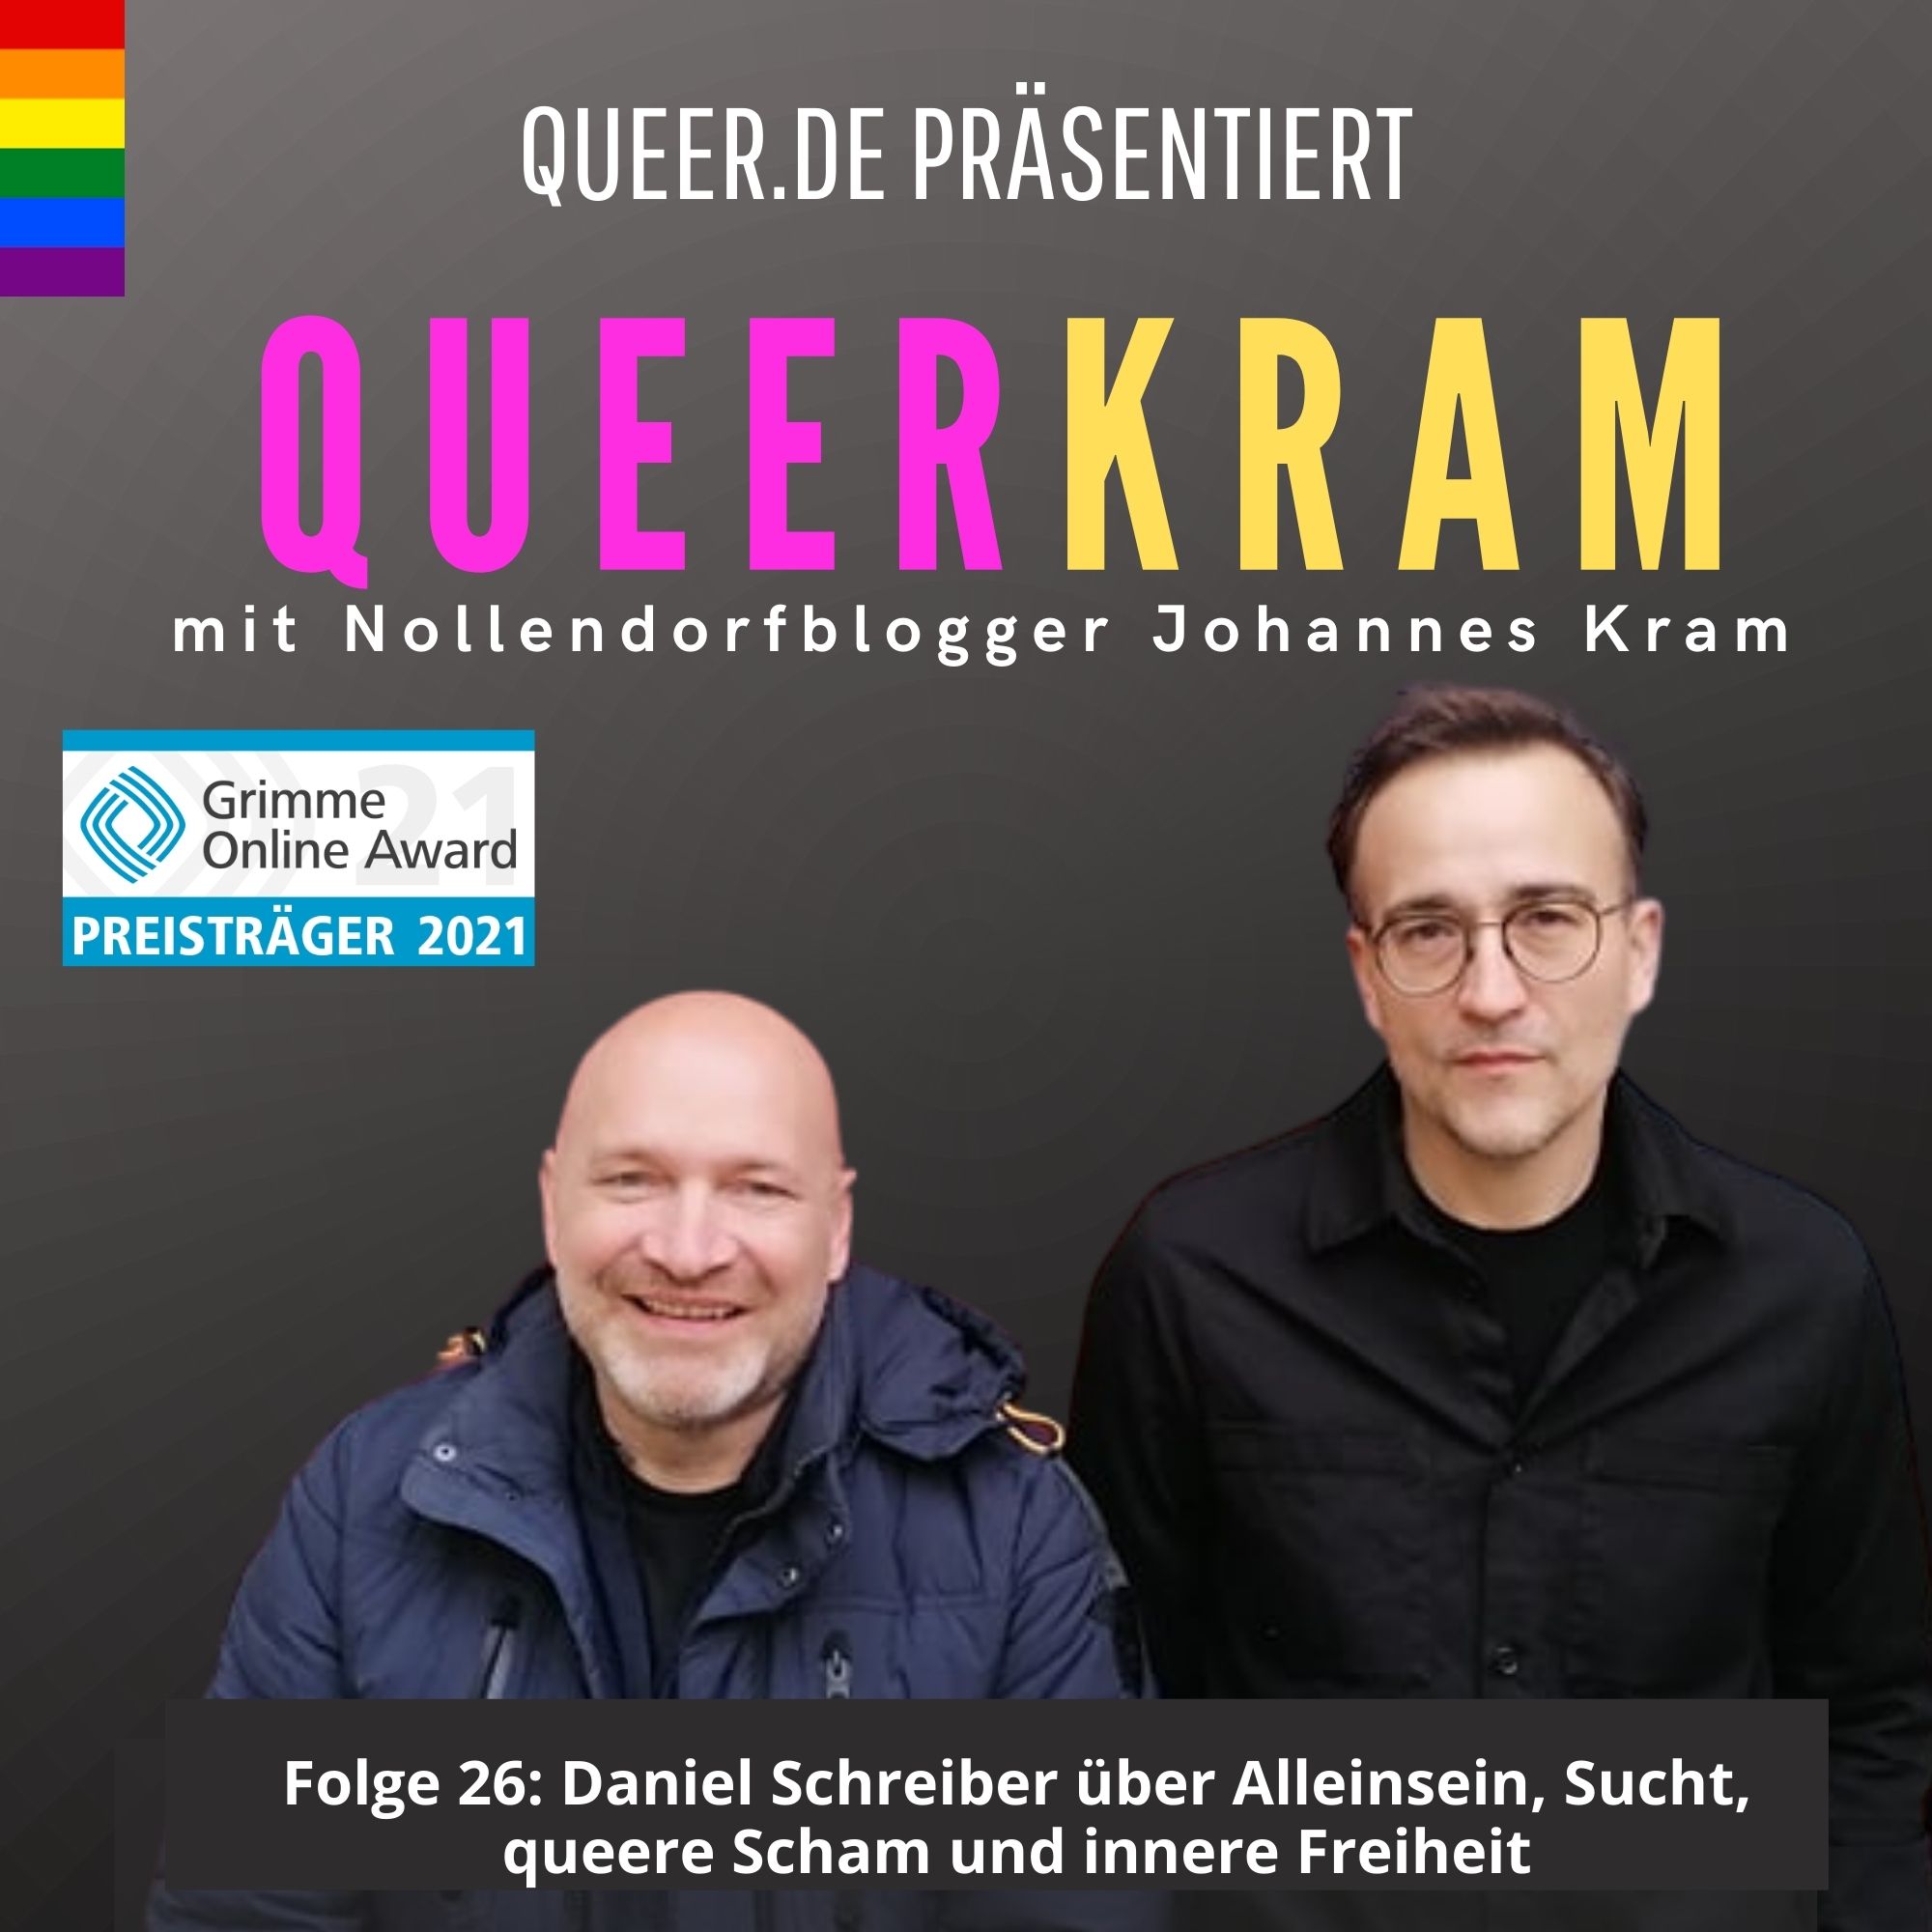 Daniel Schreiber über Alleinsein, Sucht, queere Scham und innere Freiheit